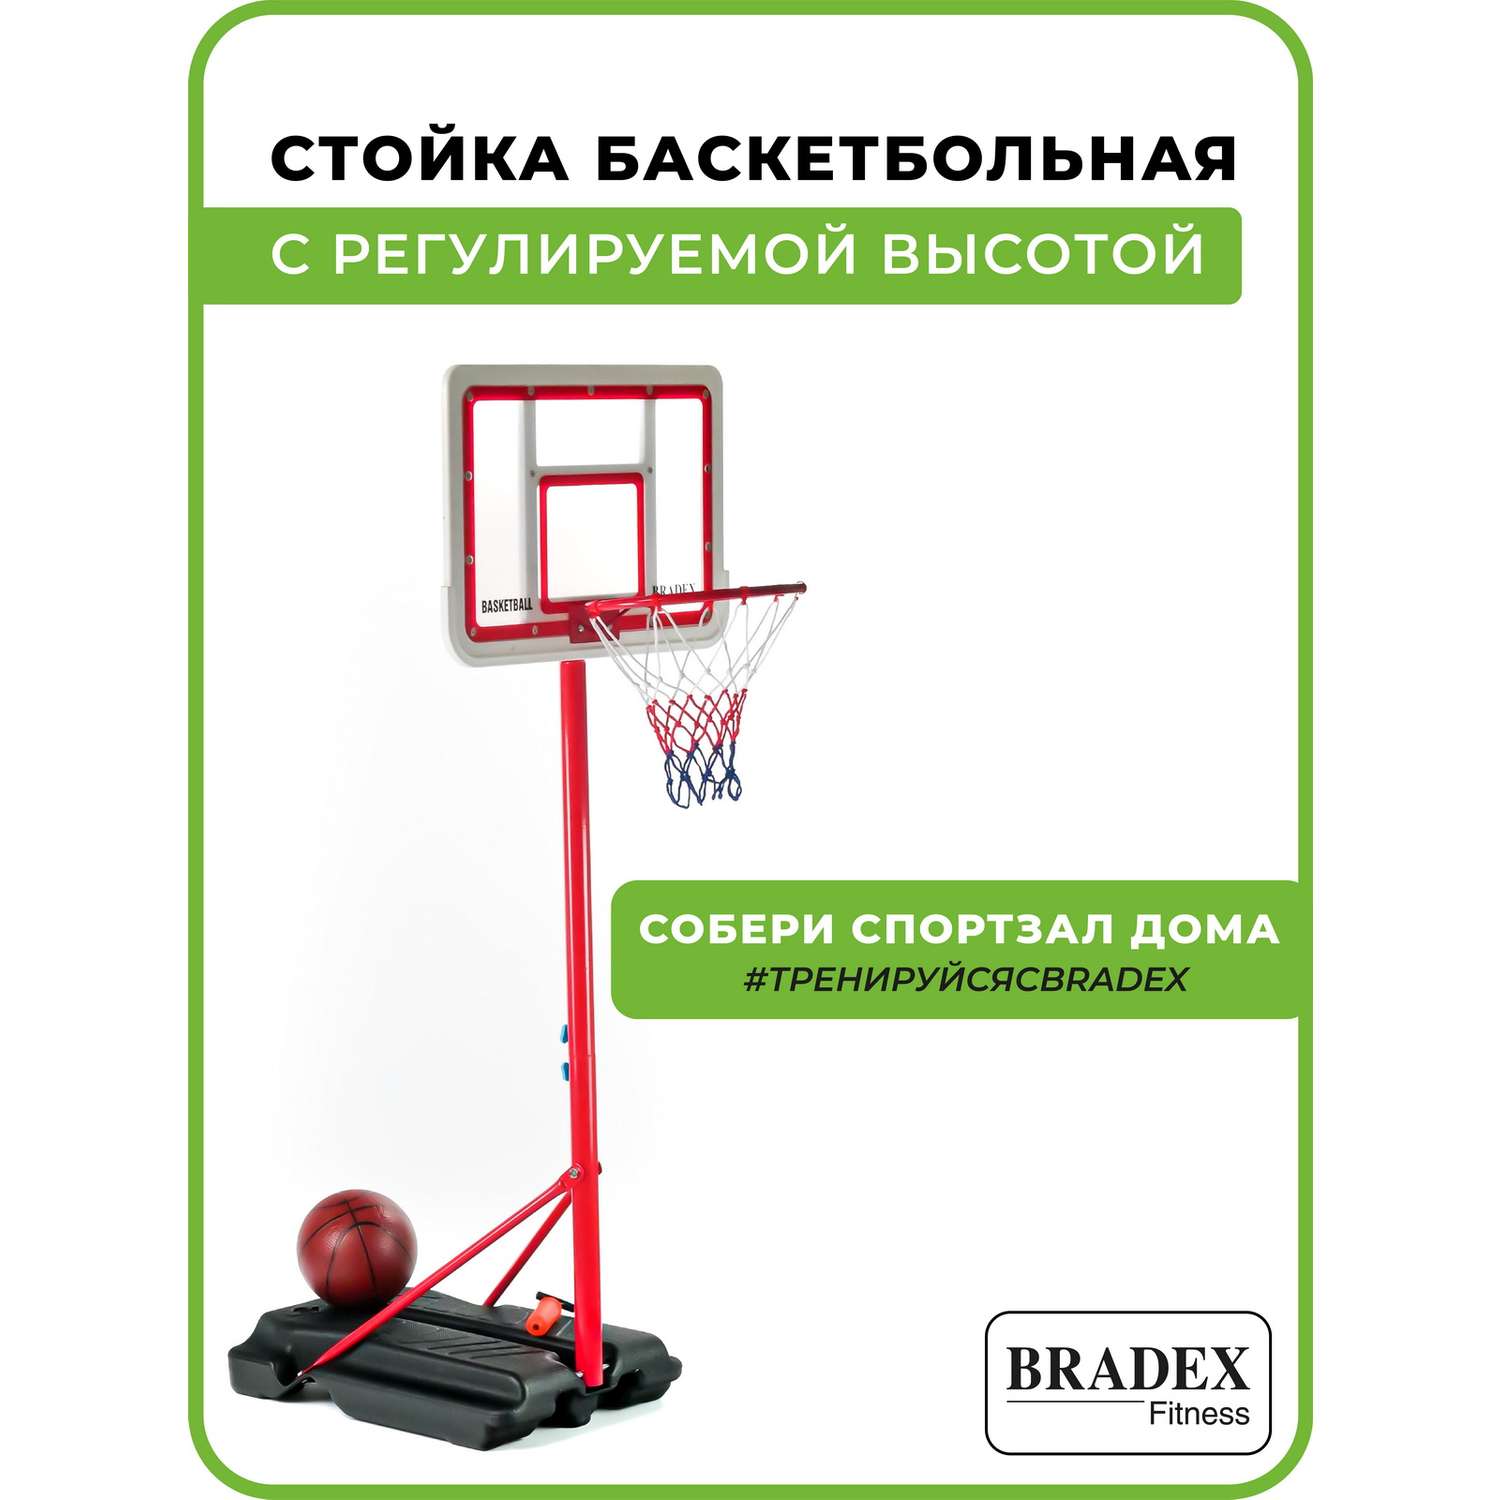 Стойка баскетбольная Bradex с регулируемой высотой - фото 2